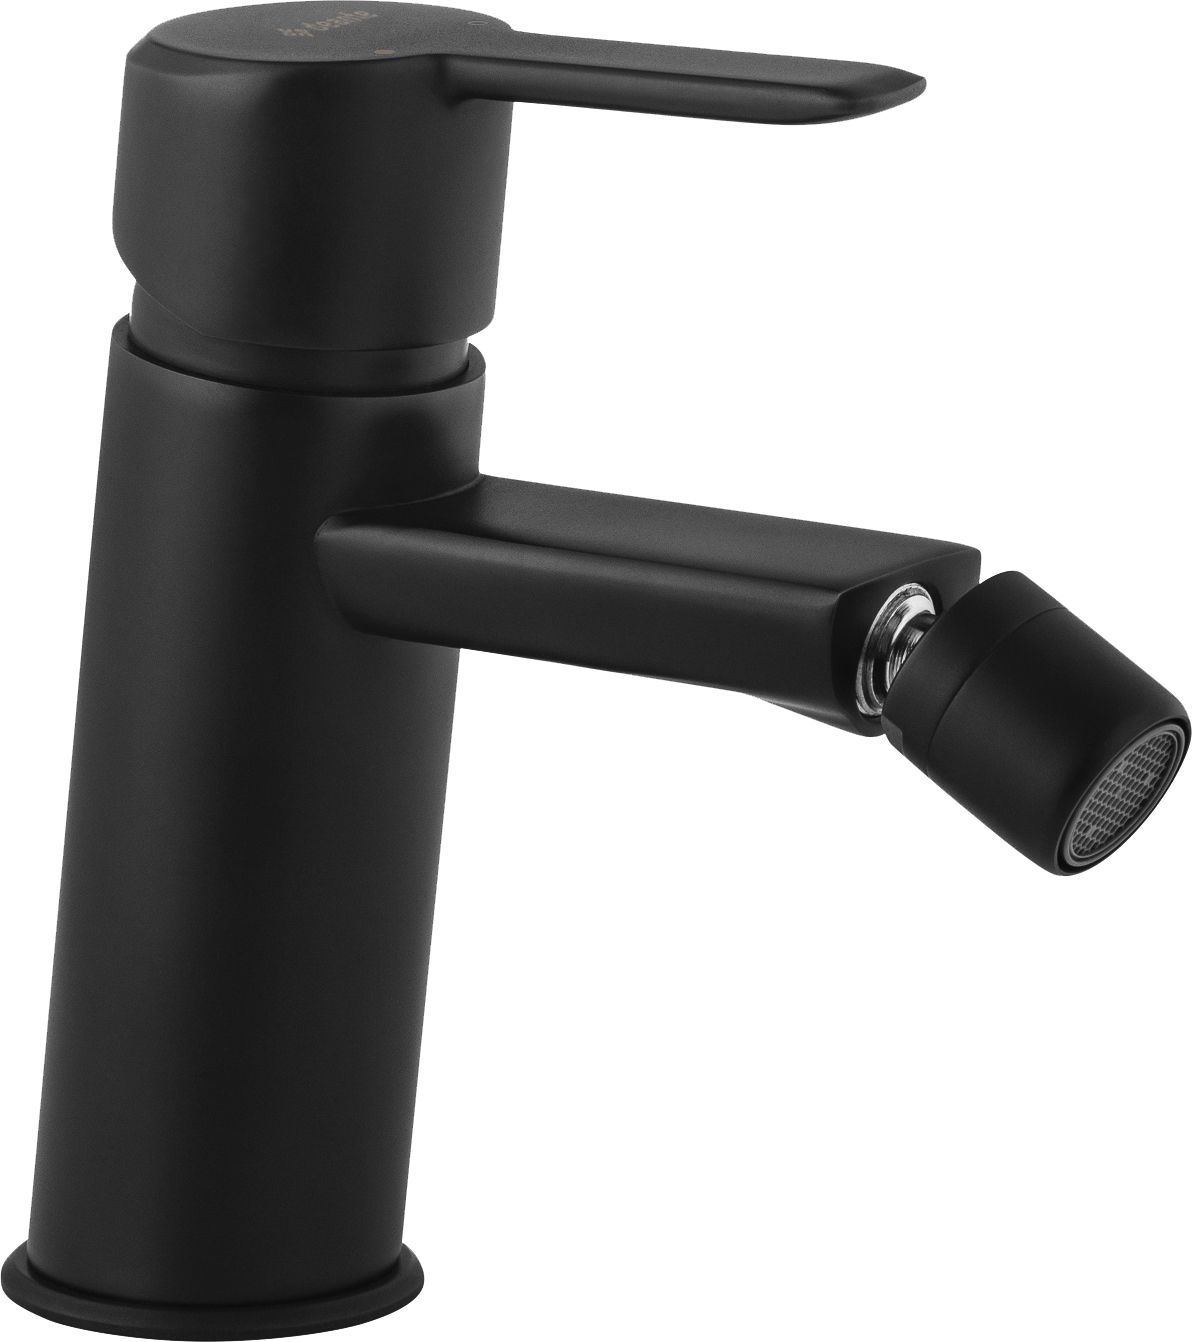 Bidet tap - BQA_N31M - Główne zdjęcie produktowe